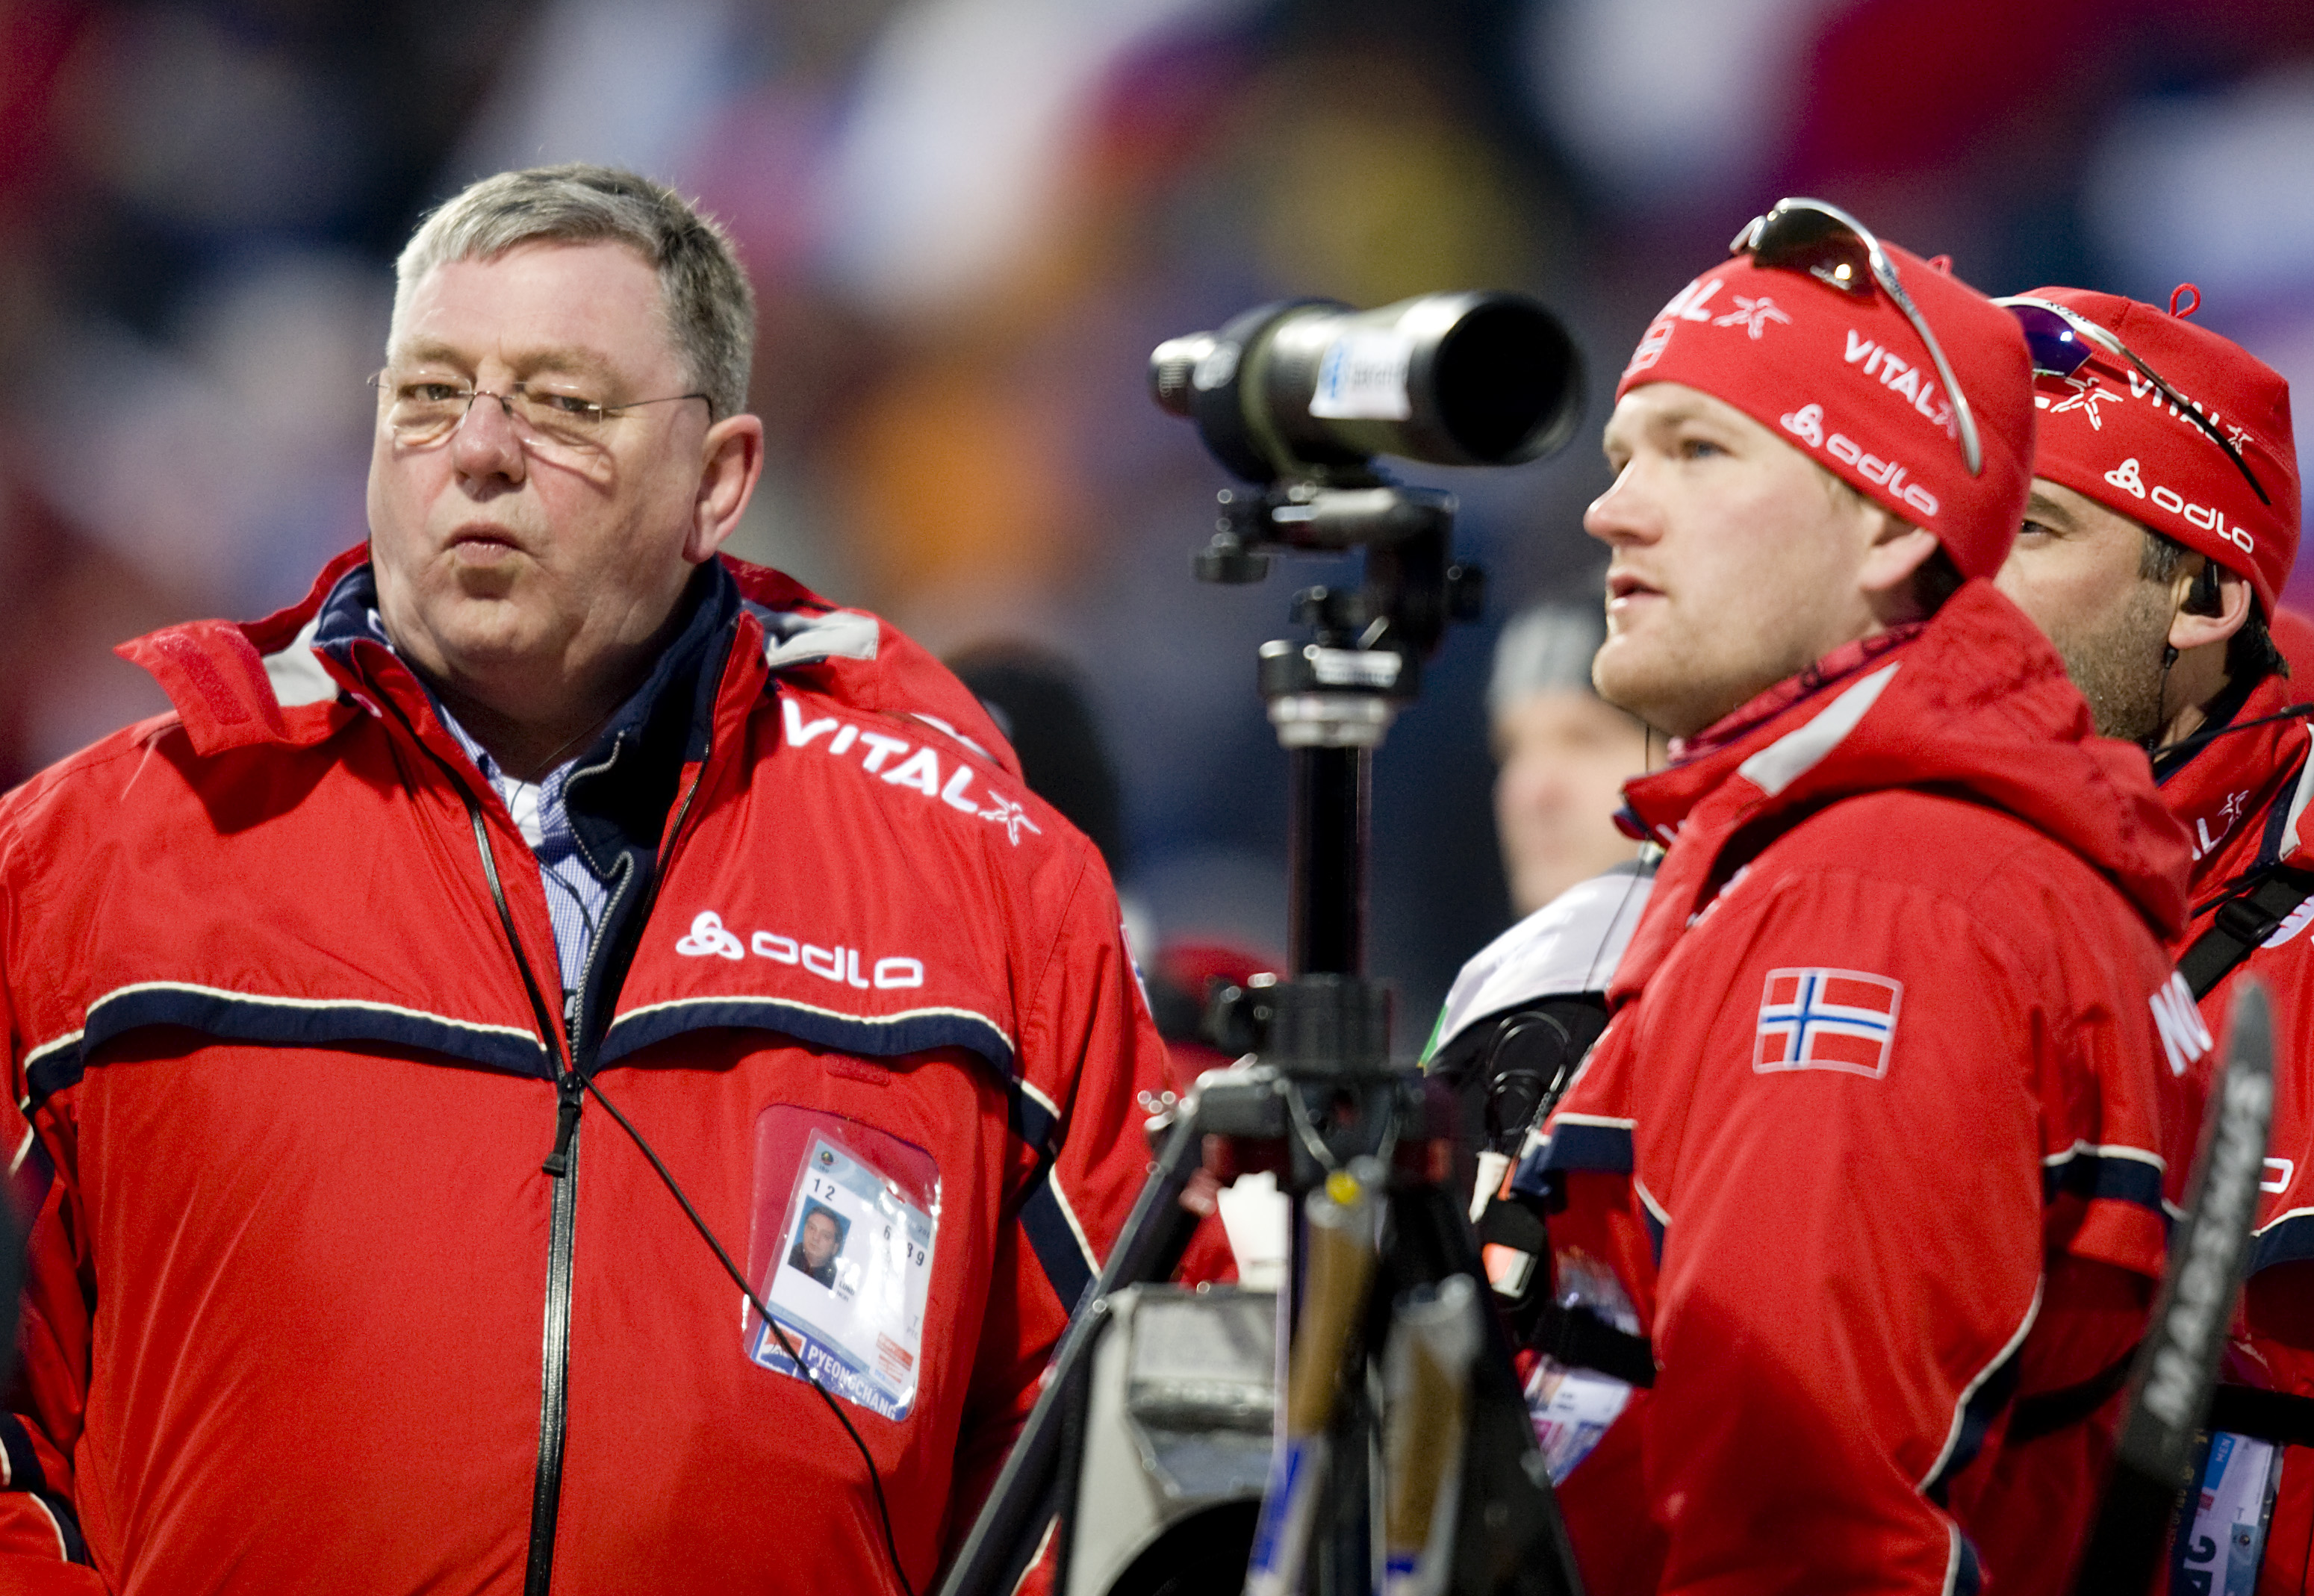 jacob lund er død – ble kjent som sponsorgeneral for norsk idrett